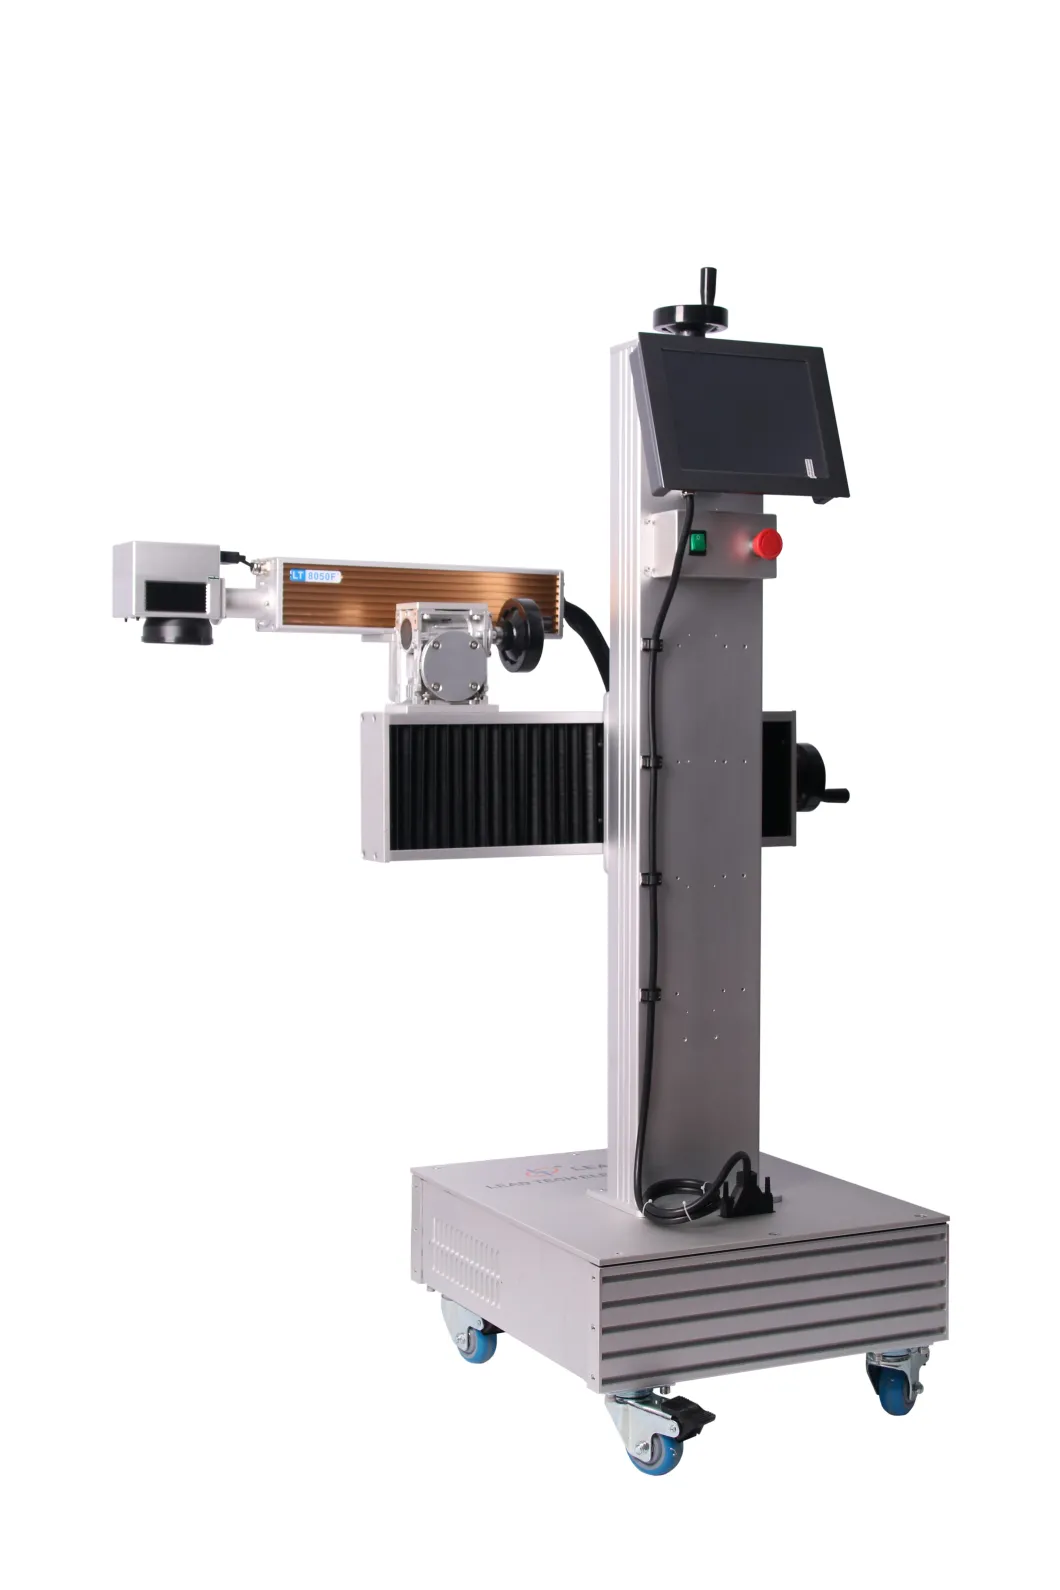 Lt8020f/Lt8030f/Lt8050f Fiber Laser Printer Desktop Laser Marking Machine